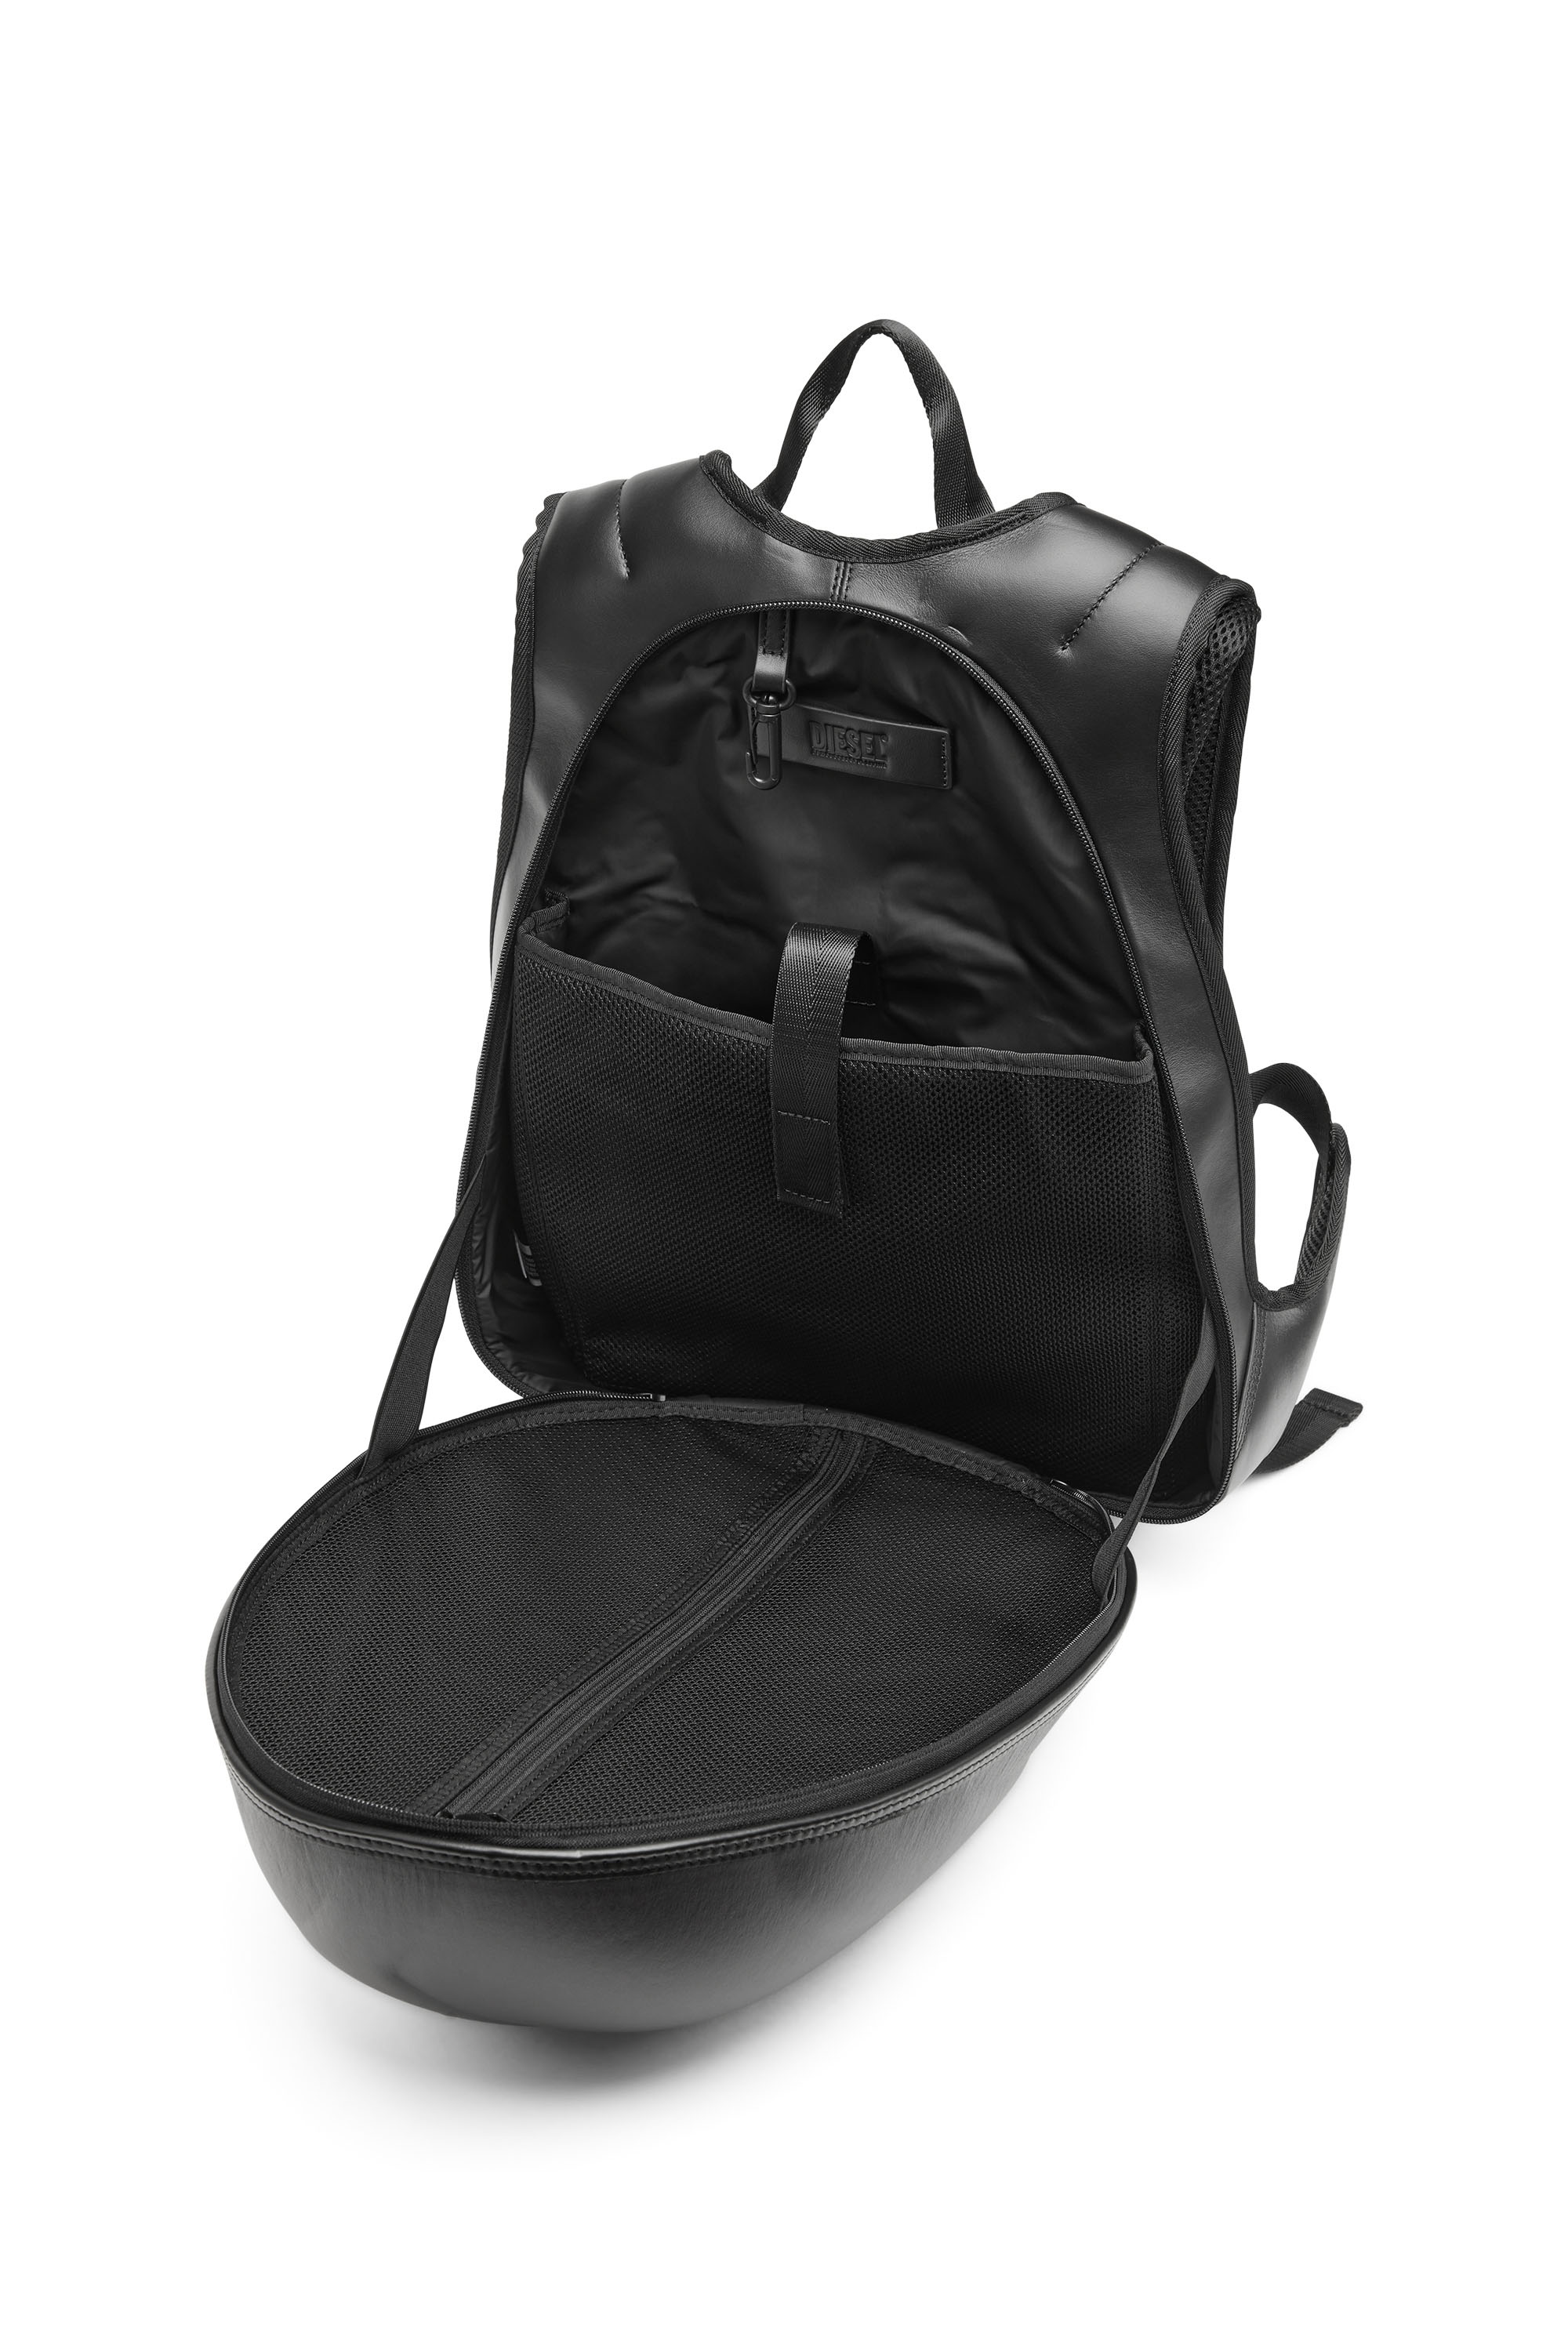 Diesel - 1DR-POD BACKPACK, Man 1DR-Pod Backpack - Hard shell leather backpack in Black - Image 4